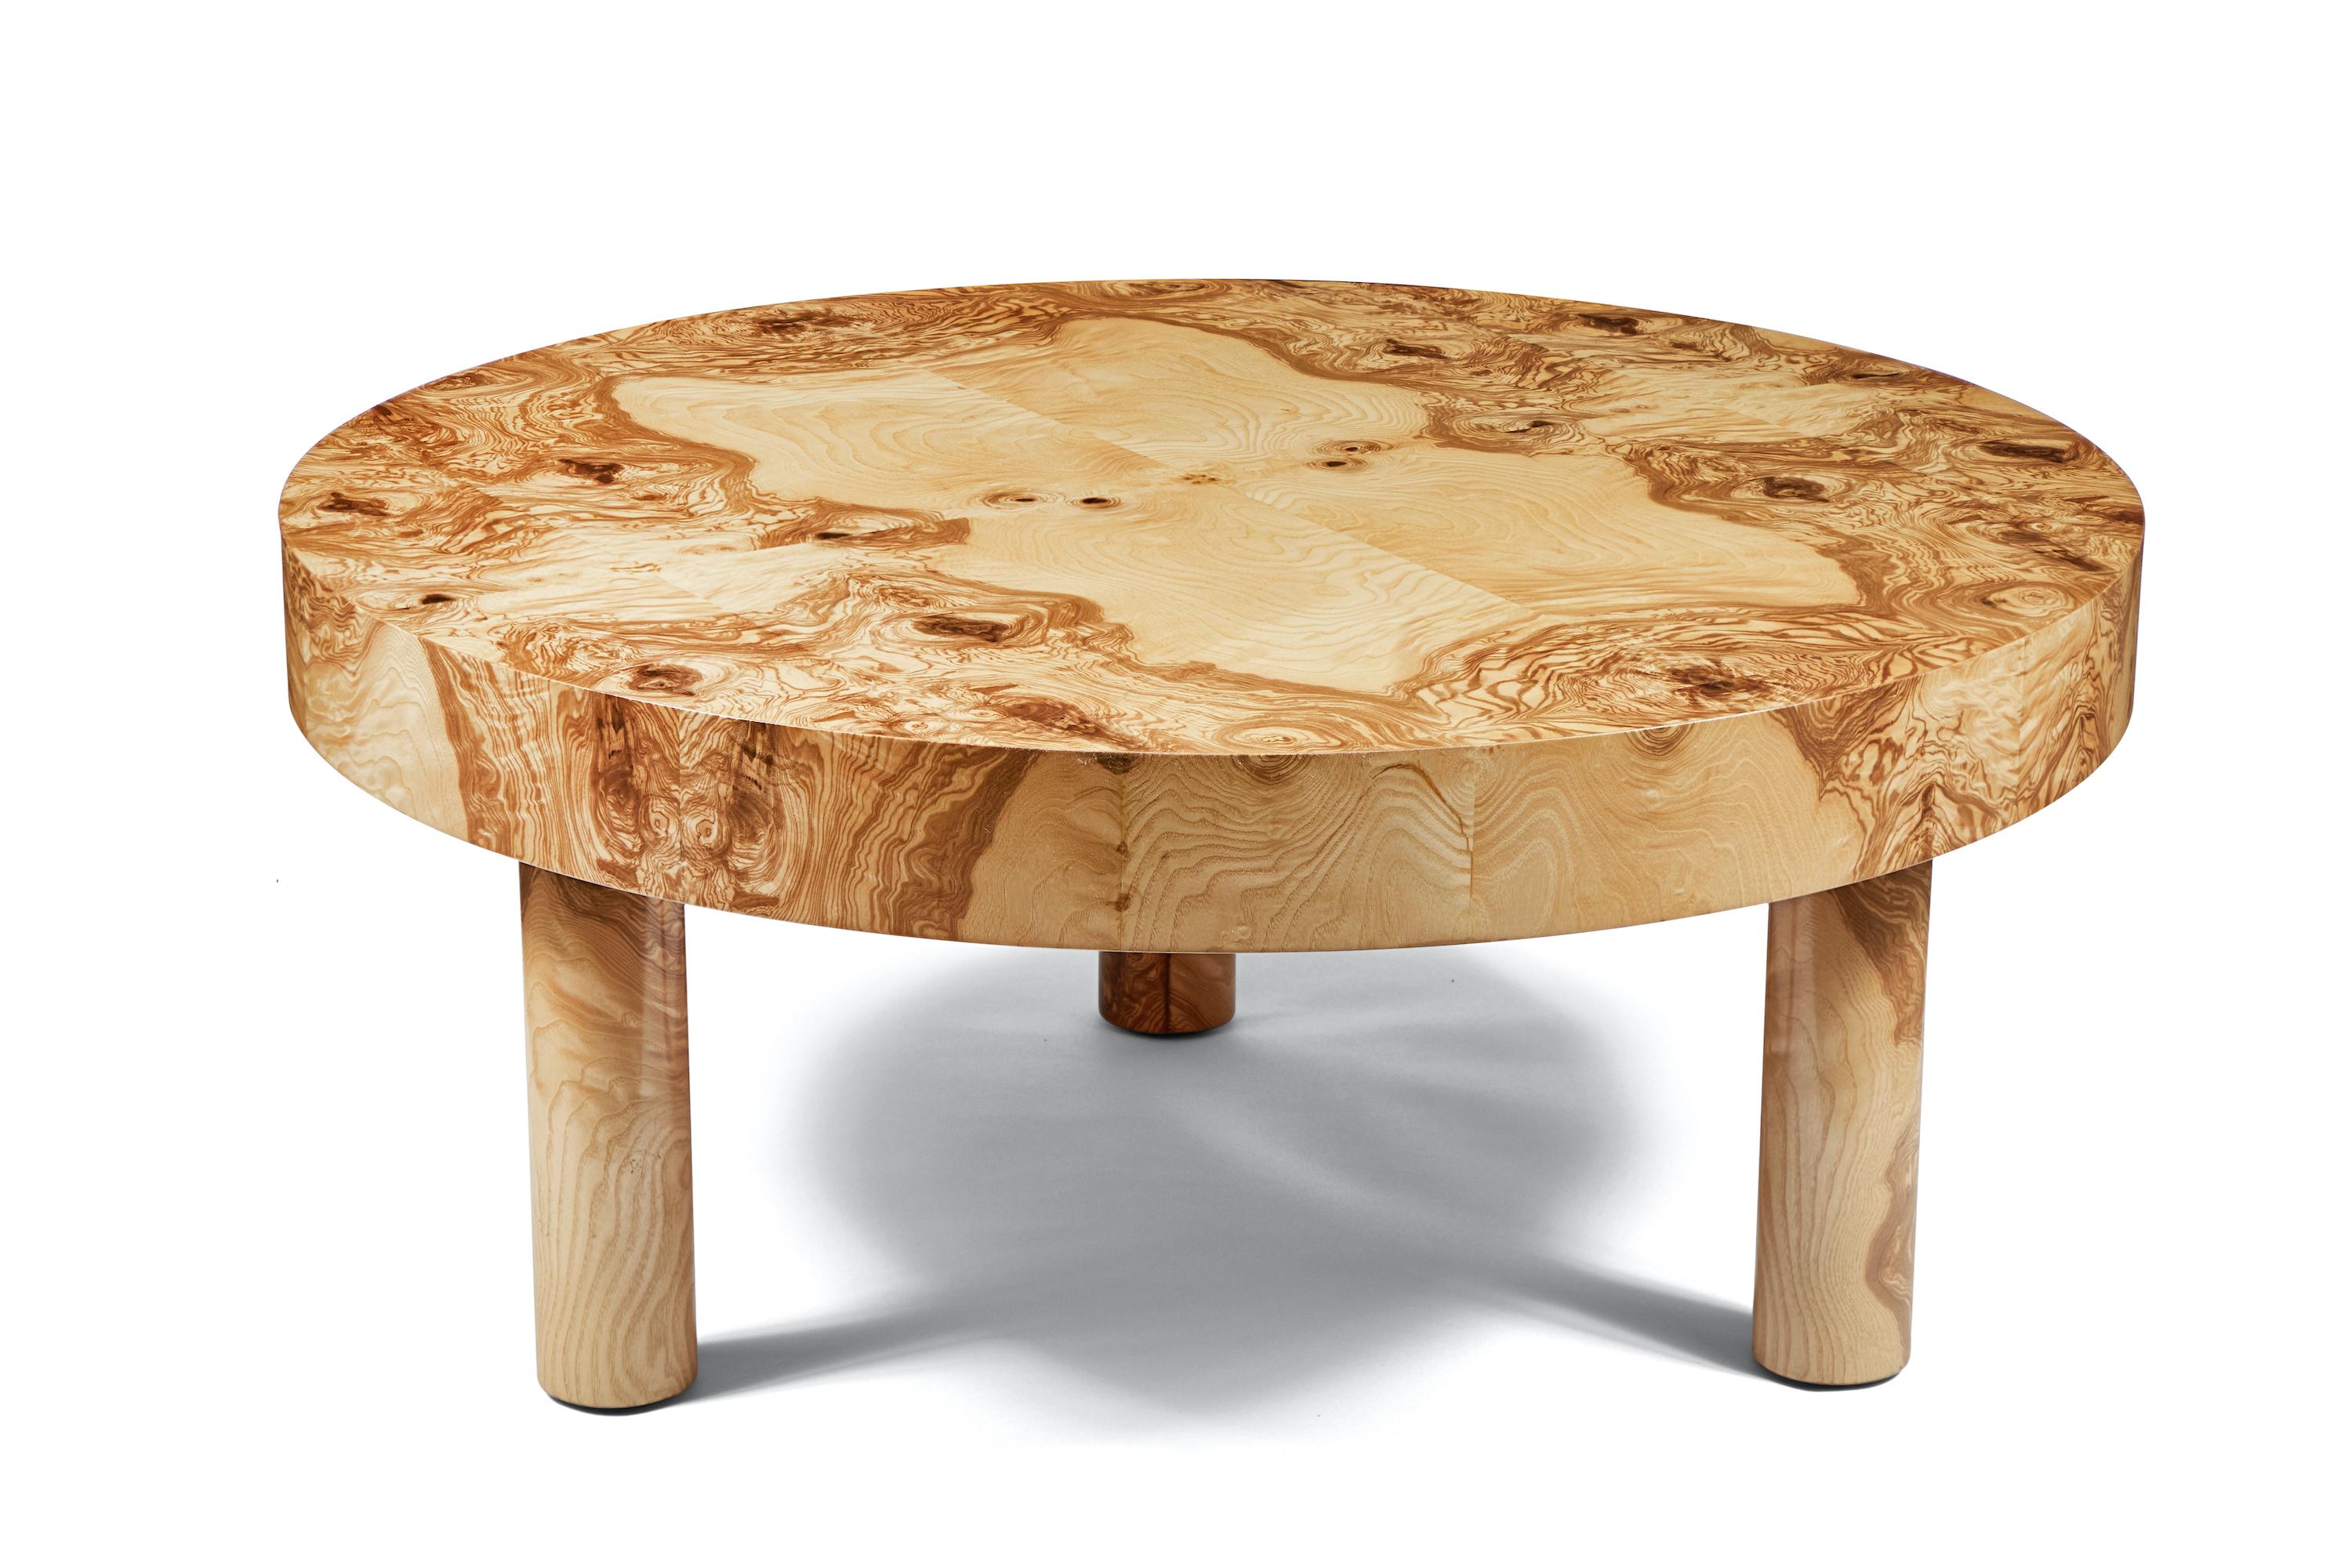 Des bois figuratifs et des lignes décontractées et épurées se combinent dans notre table Carlton, présentée ici dans notre finition Natural Burl Wood. 

Dimensions : 16